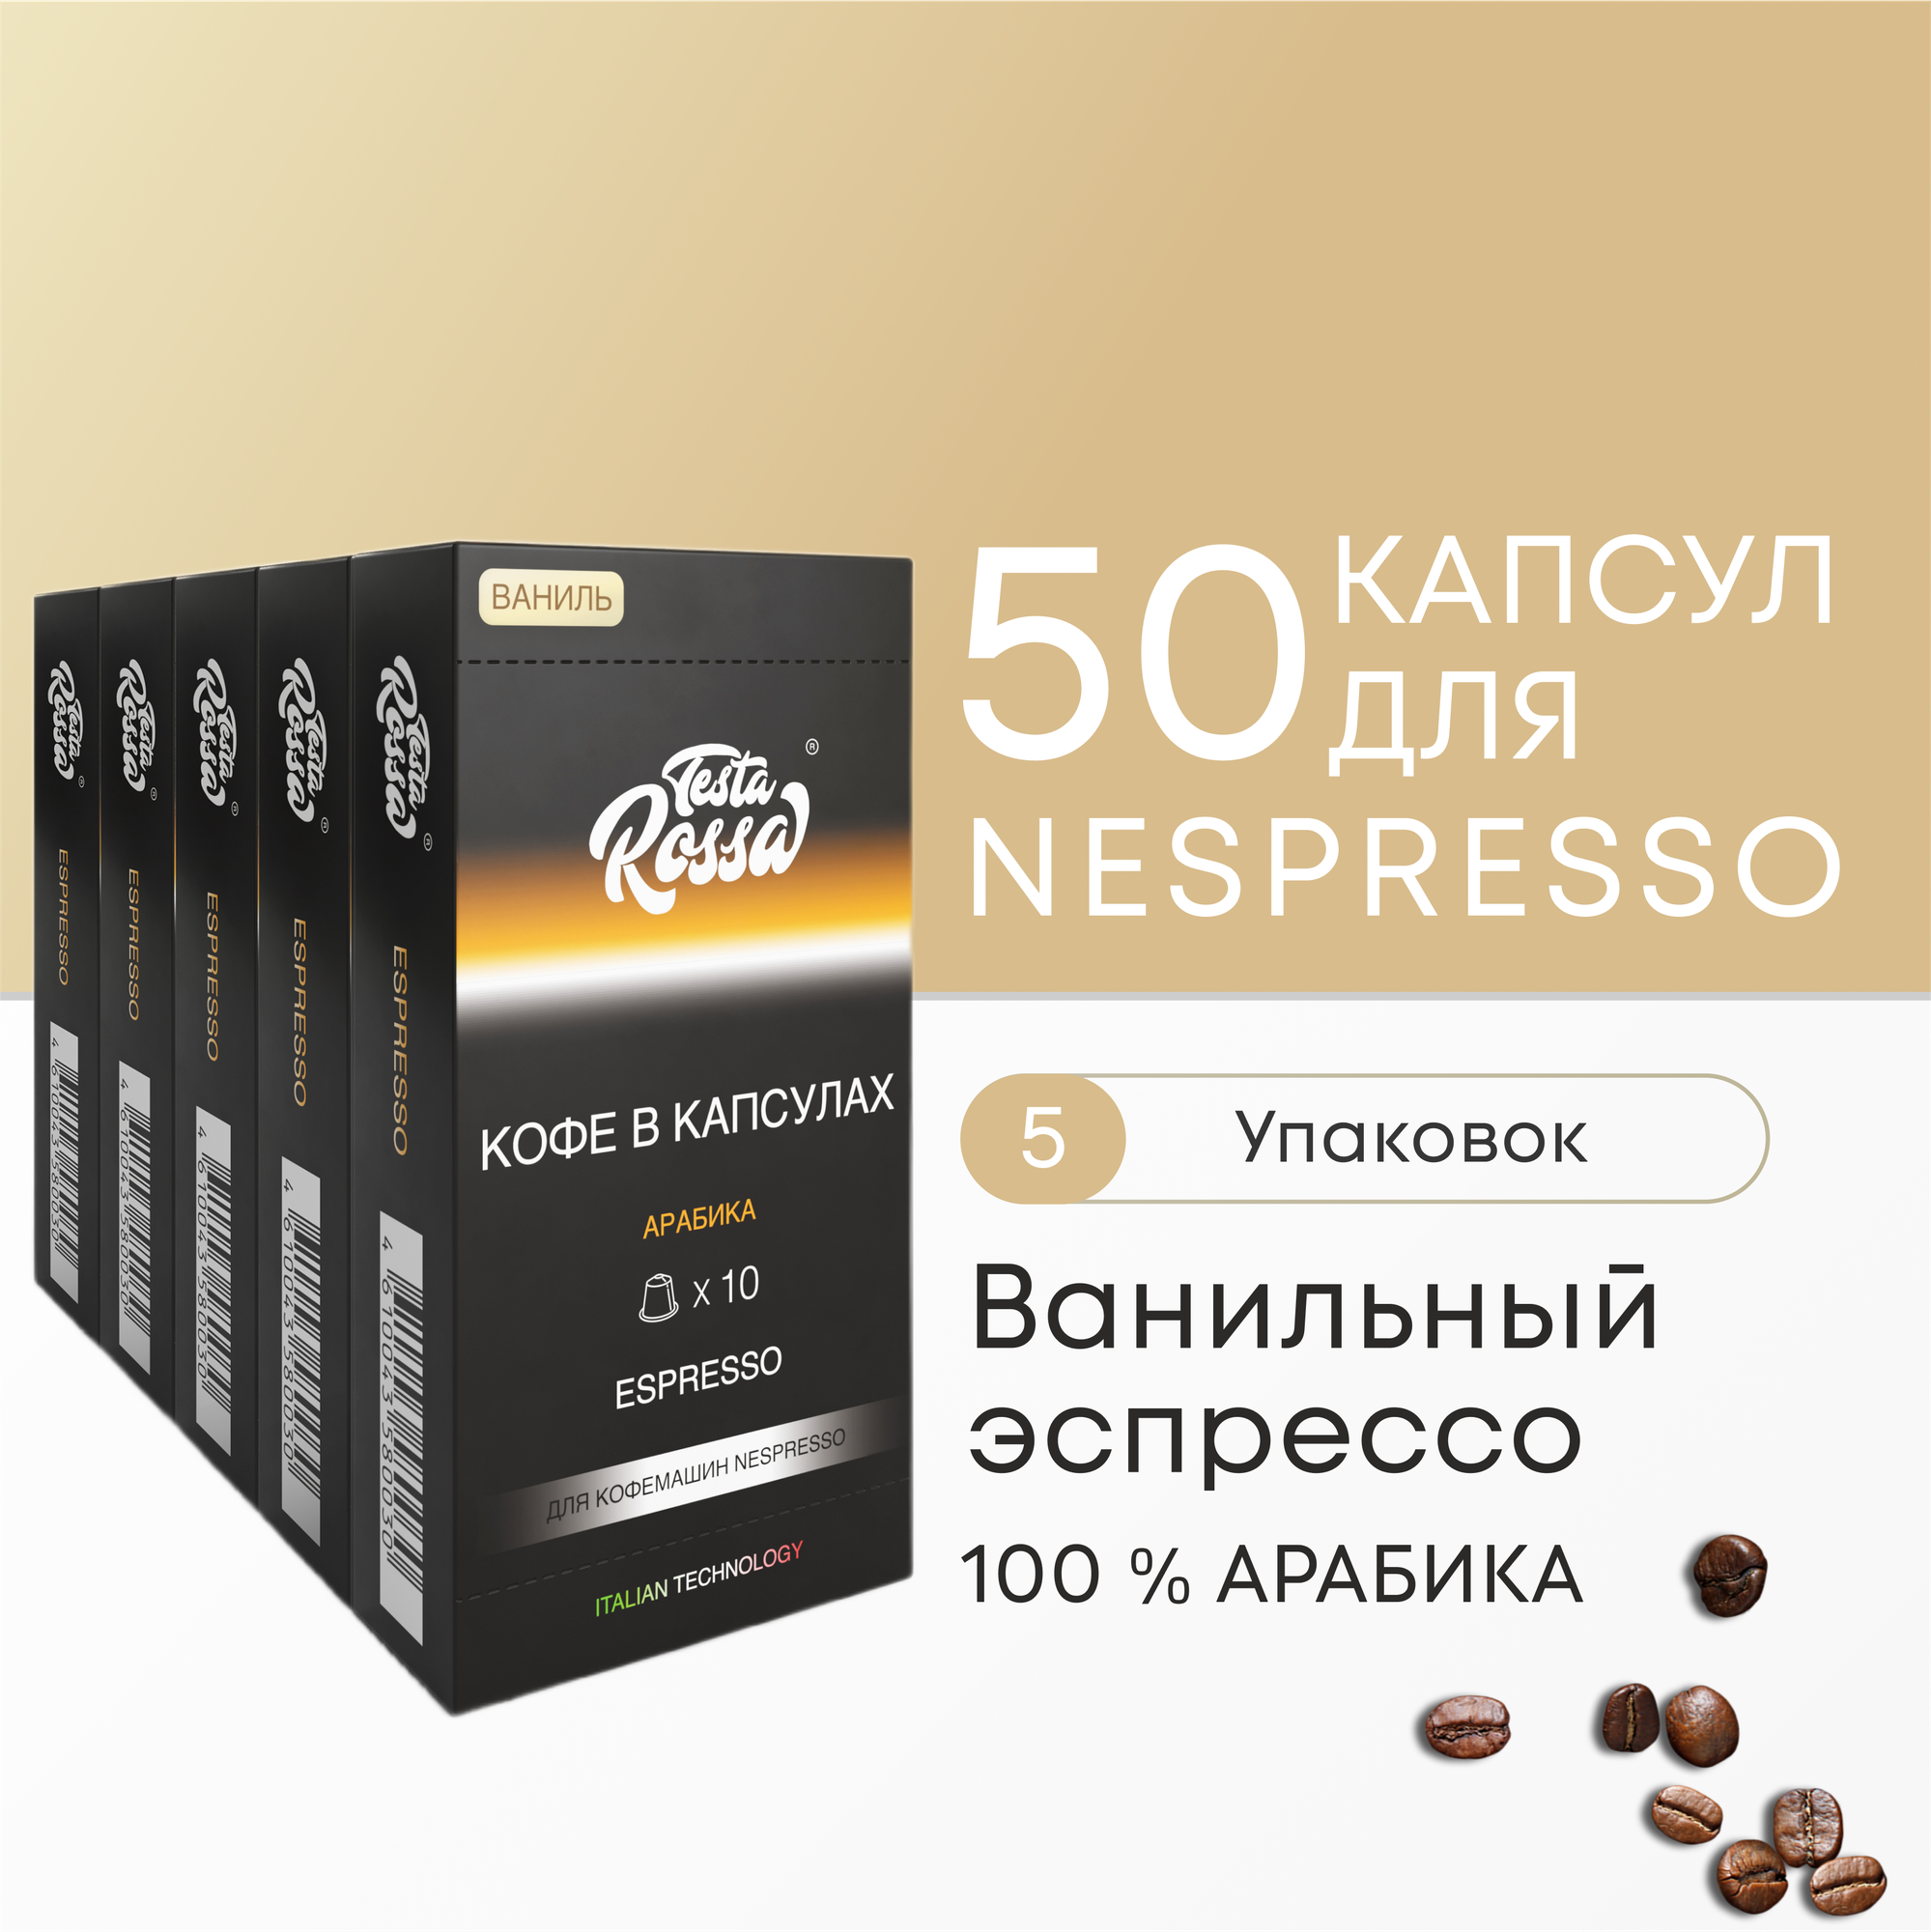 Ванильный Эспрессо - 100% Арабика - Капсулы Testa Rossa - 20 шт набор кофе в капсулах неспрессо для кофемашины NESPRESSO